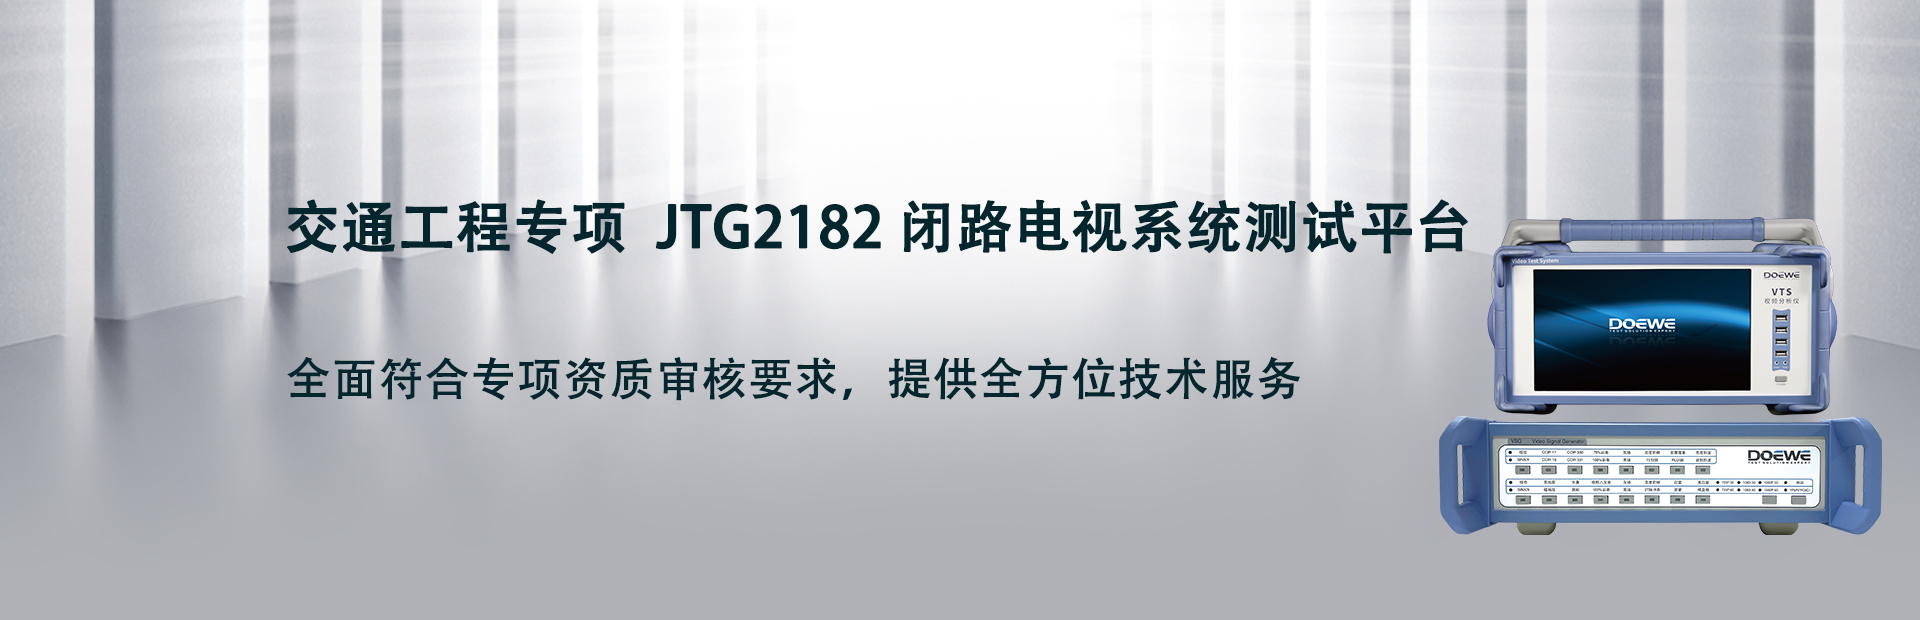 交通工程專項  JTG2182 閉路電視系統測試平臺